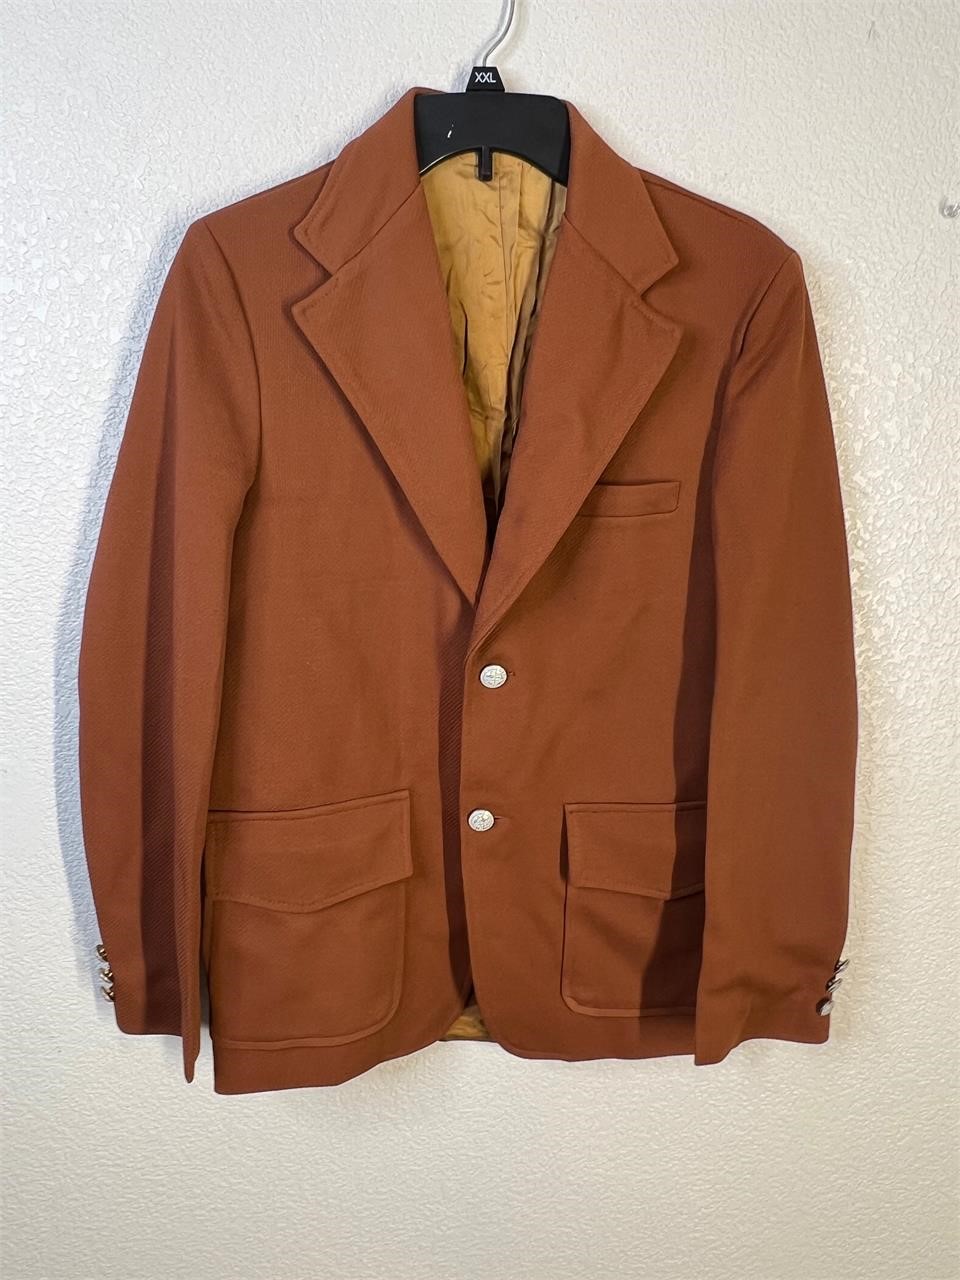 Vintage 70s Sears Put on Shop Jacket